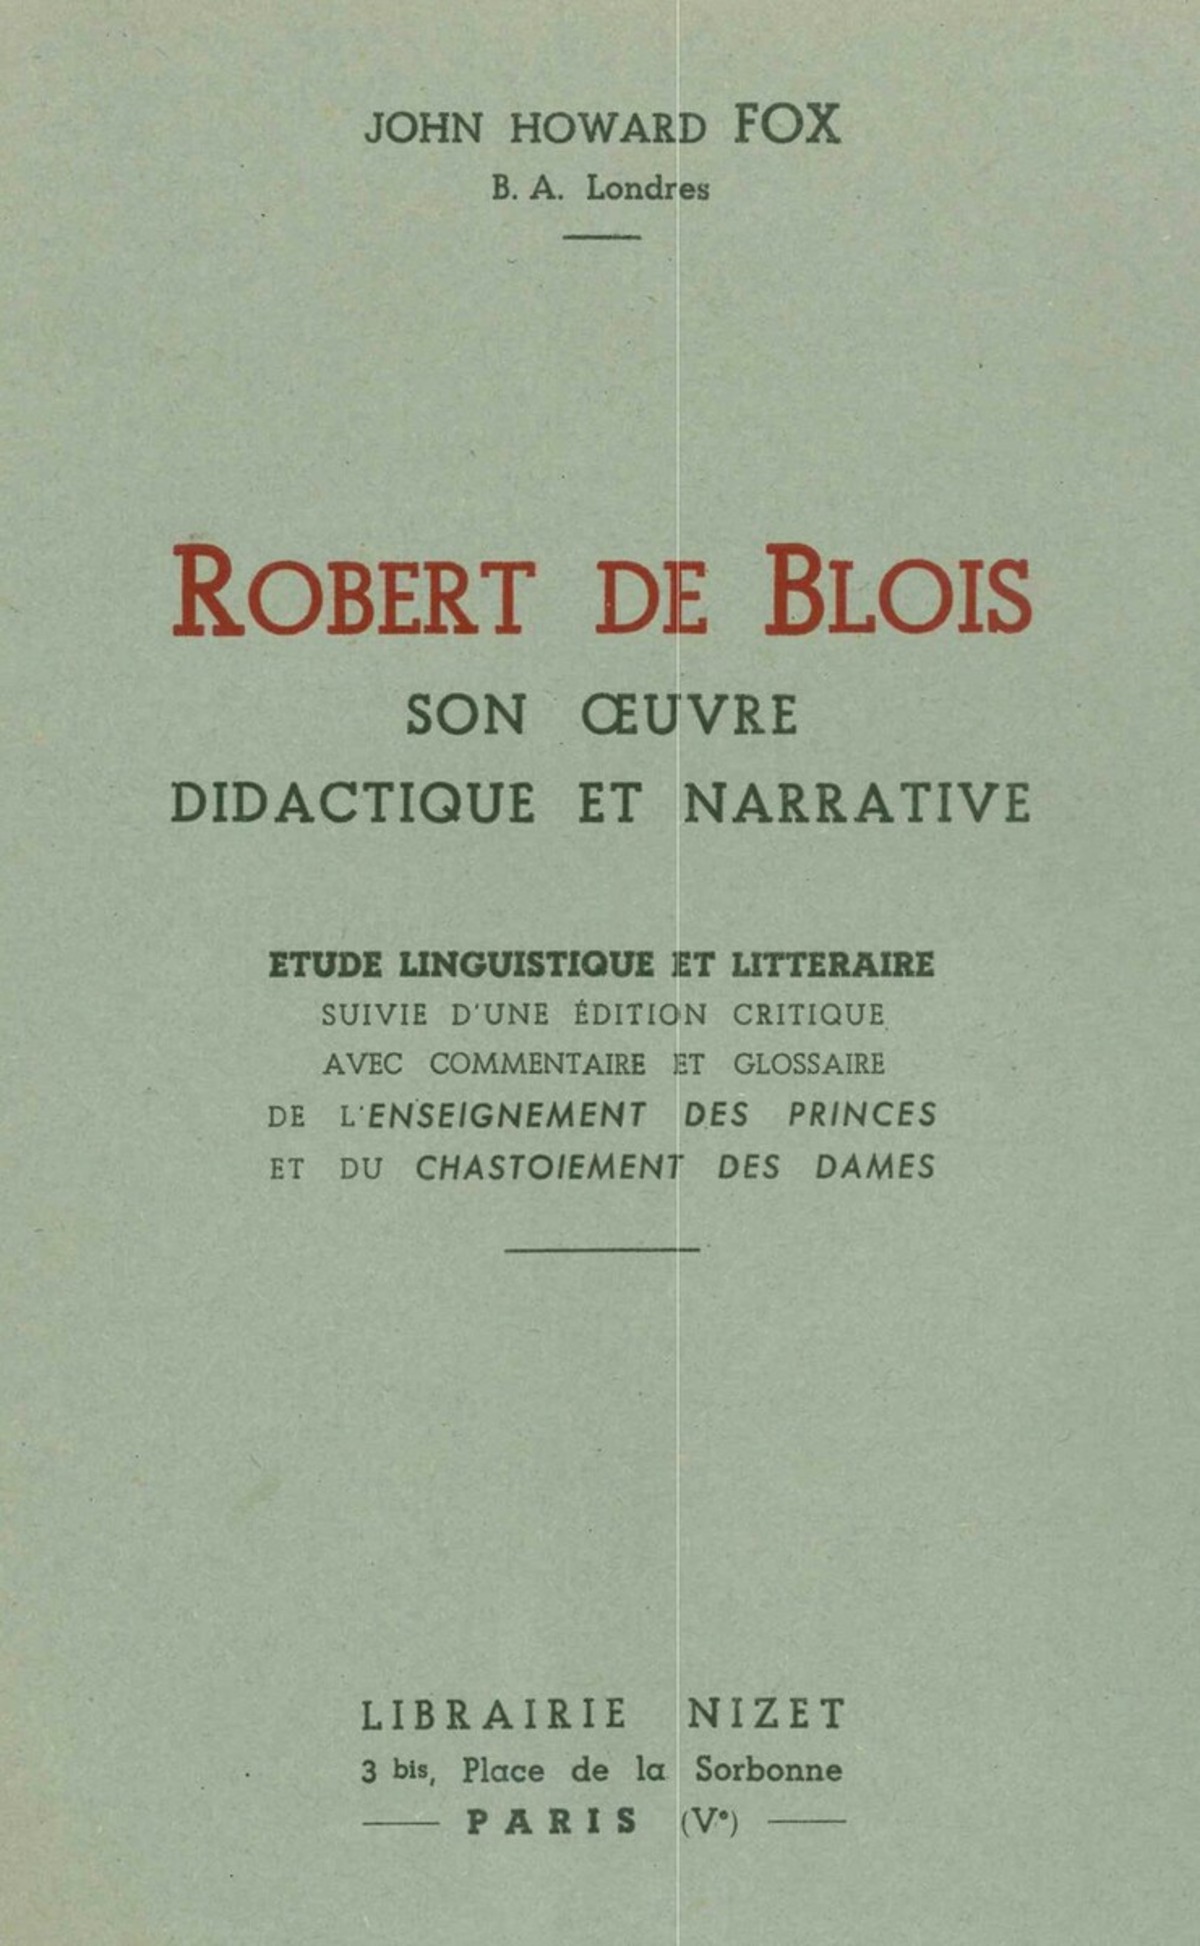 Robert de Blois, son œuvre didactique et narrative